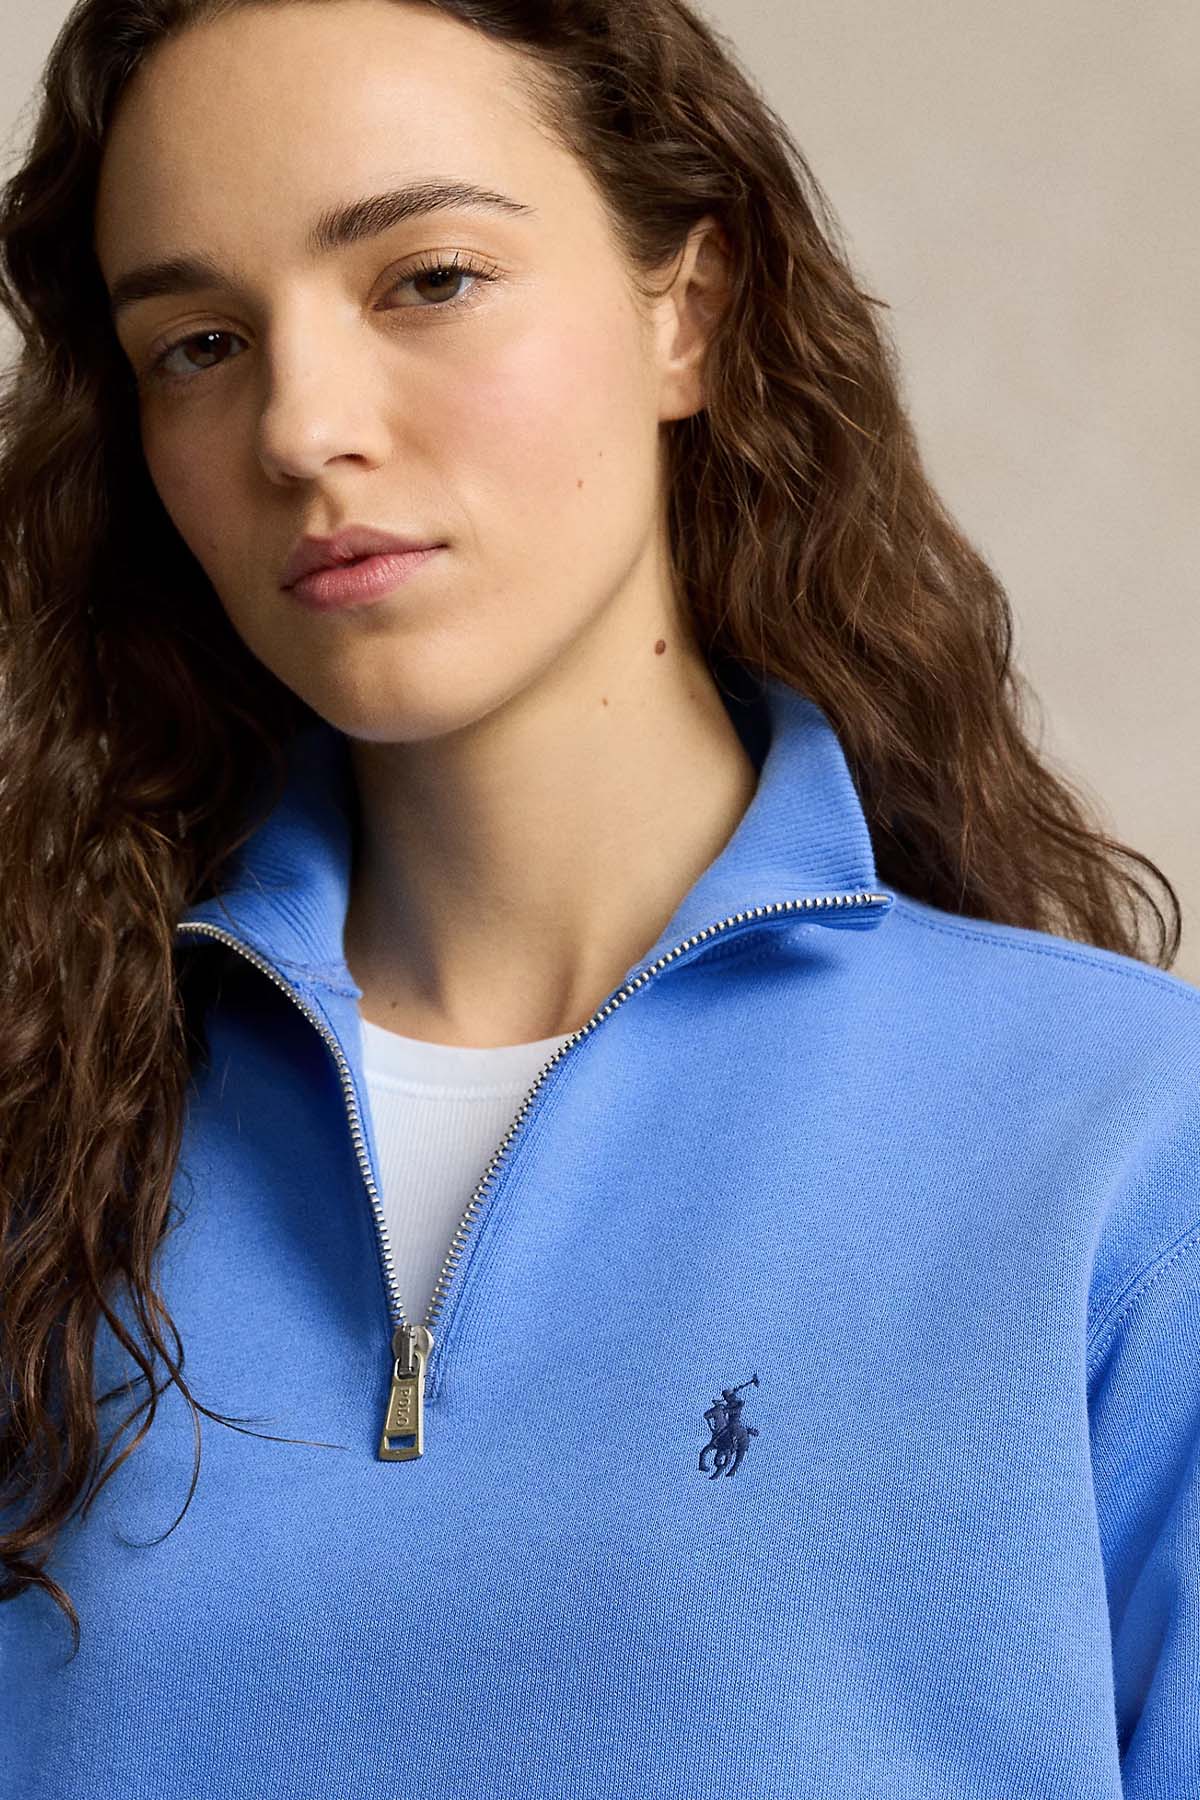 Polo Ralph Lauren Dik Yaka Yarım Fermuarlı Sweatshirt